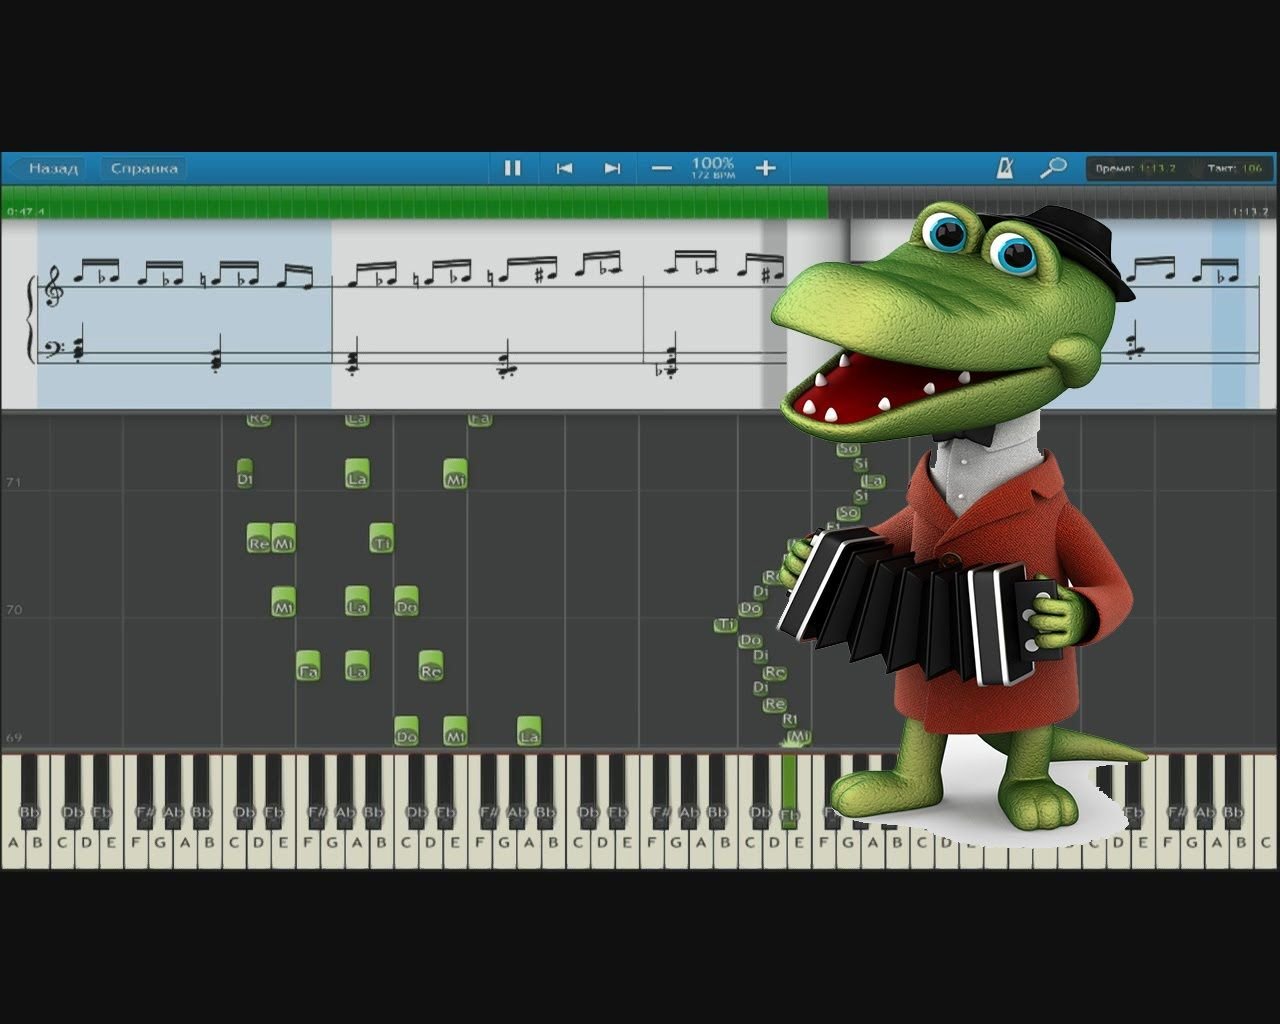 Песня крокодилы пусть бегут неуклюже. Крокодил Гена на пианино. Крокодил Гена на синтезаторе. Крокодил Гена на синтезаторе цифрами. Крокодил Гена на пианино по клавишам.